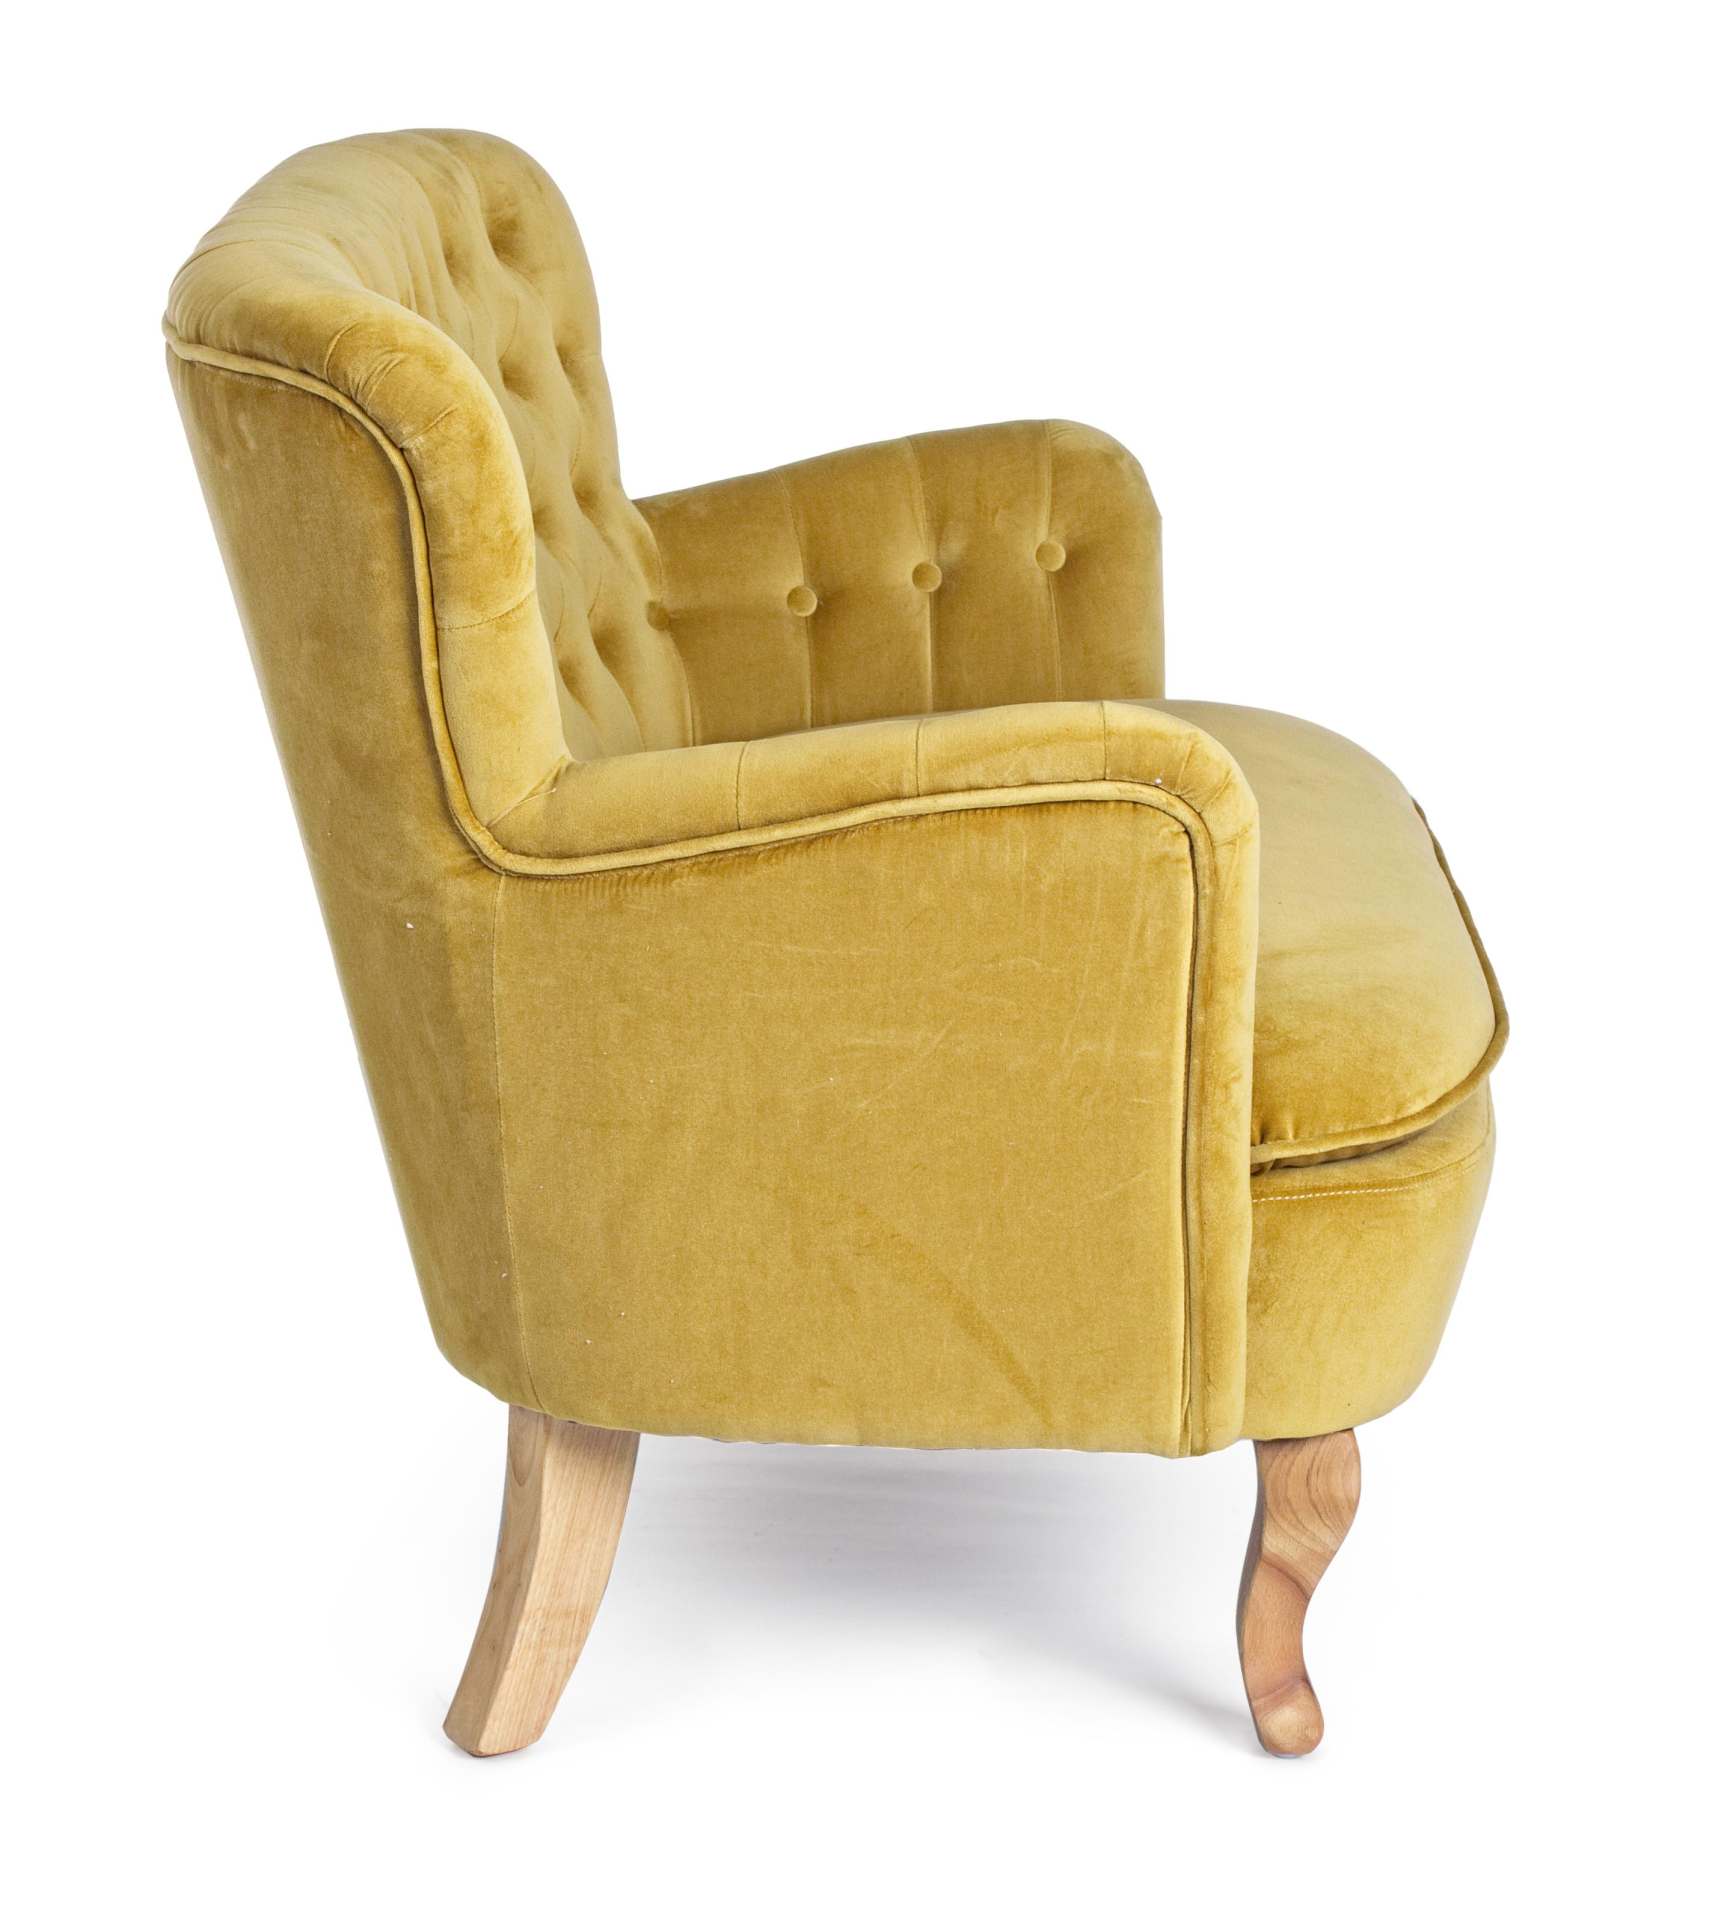 Das Sofa Orlins überzeugt mit seinem klassischen Design. Gefertigt wurde es aus Stoff in Samt-Optik, welcher einen gelben Farbton besitzt. Das Gestell ist aus Kiefernholz und hat eine natürliche Farbe. Das Sofa ist in der Ausführung als 2-Sitzer. Die Brei